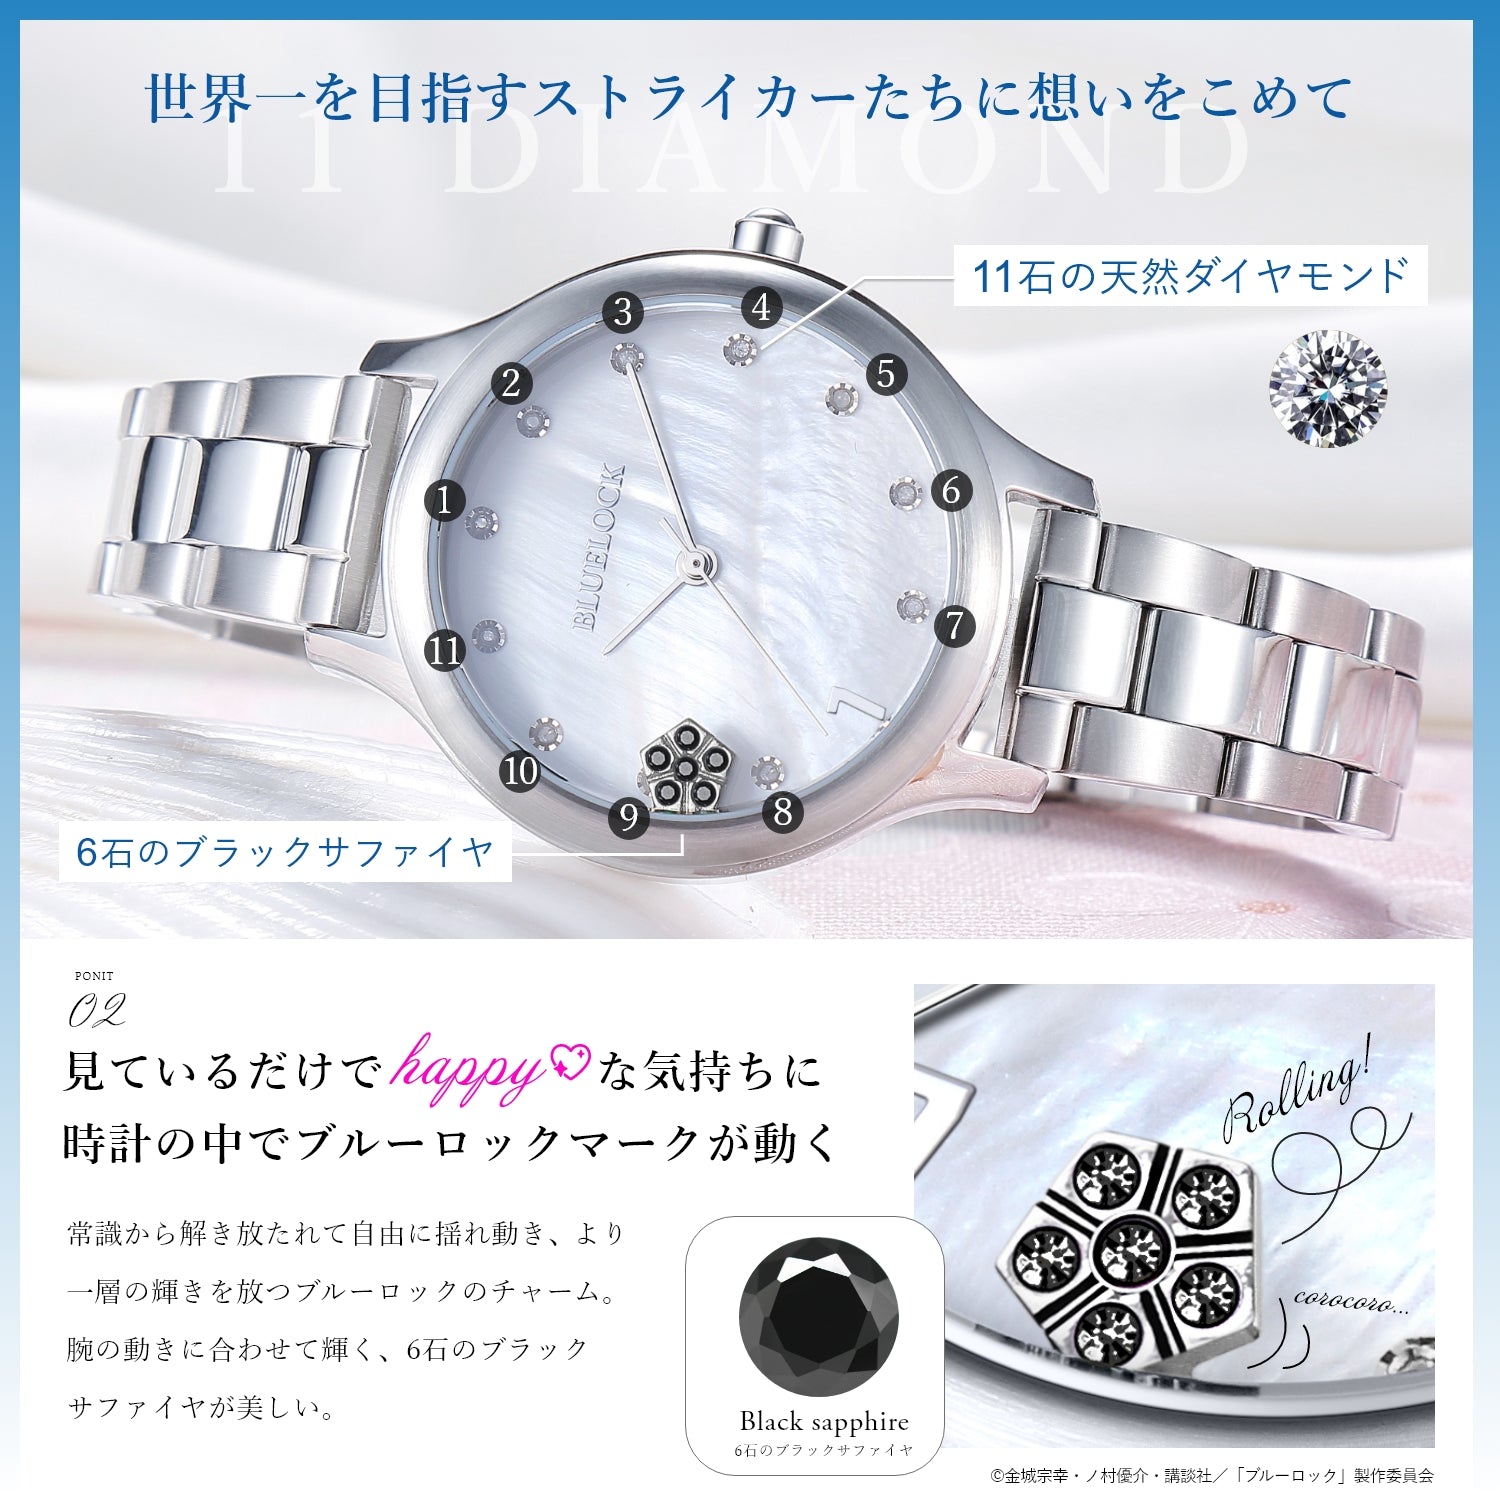 TVアニメ「ブルーロック」天然ダイヤモンド付き ムービングジュエリー腕時計 凪 誠士郎